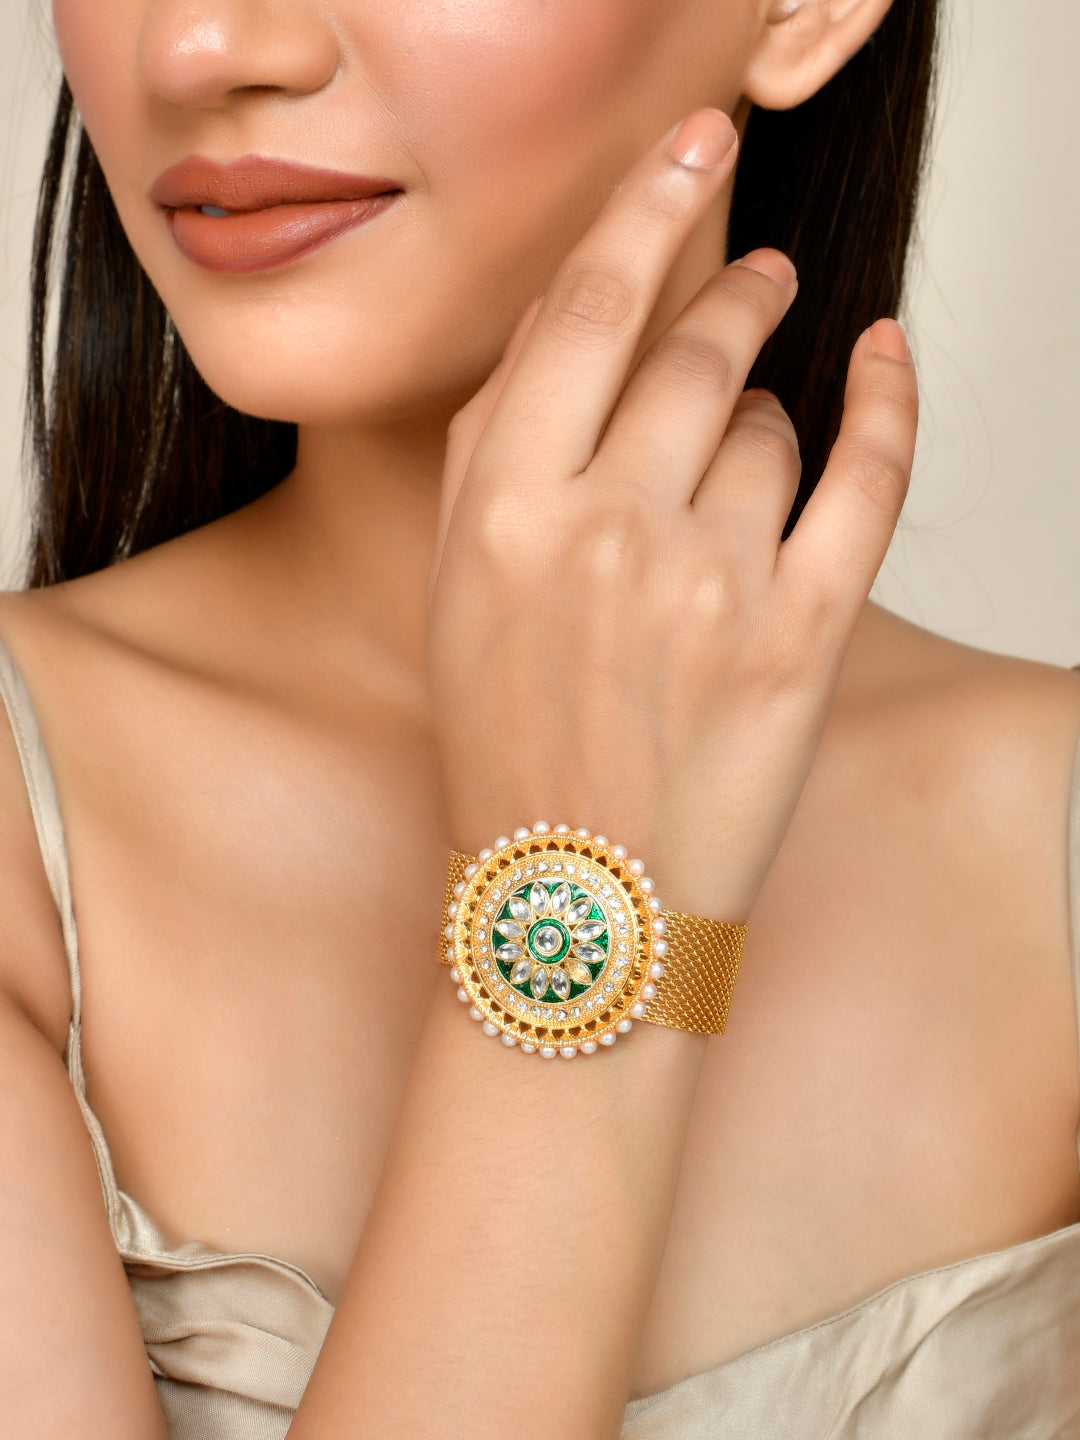 Buy Classic Simple Stylish Kundan Ring Bracelet at Amazon.in